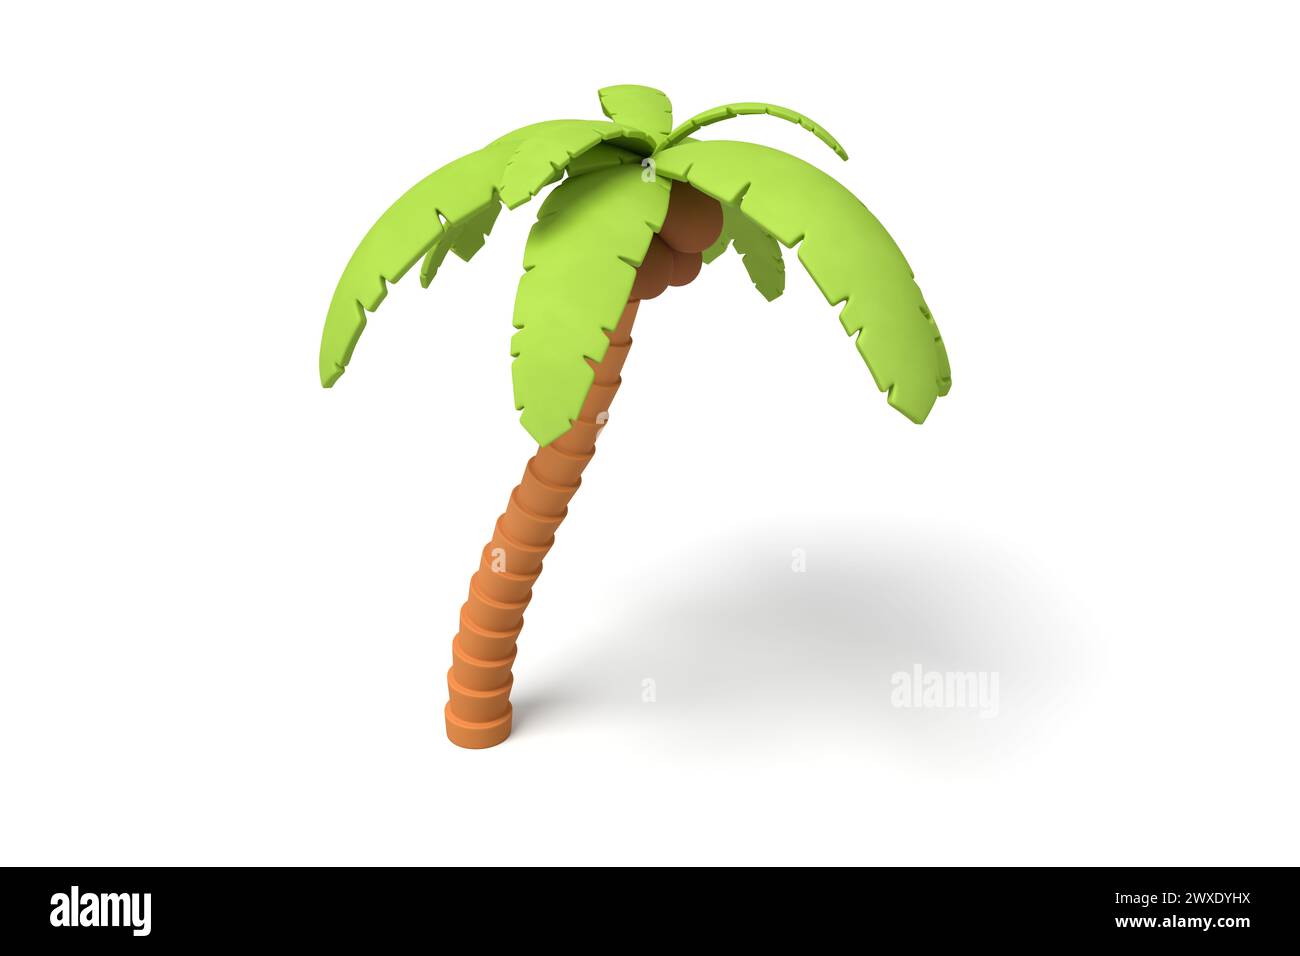 Palmera de dibujos animados 3D con hojas verdes Foto de stock